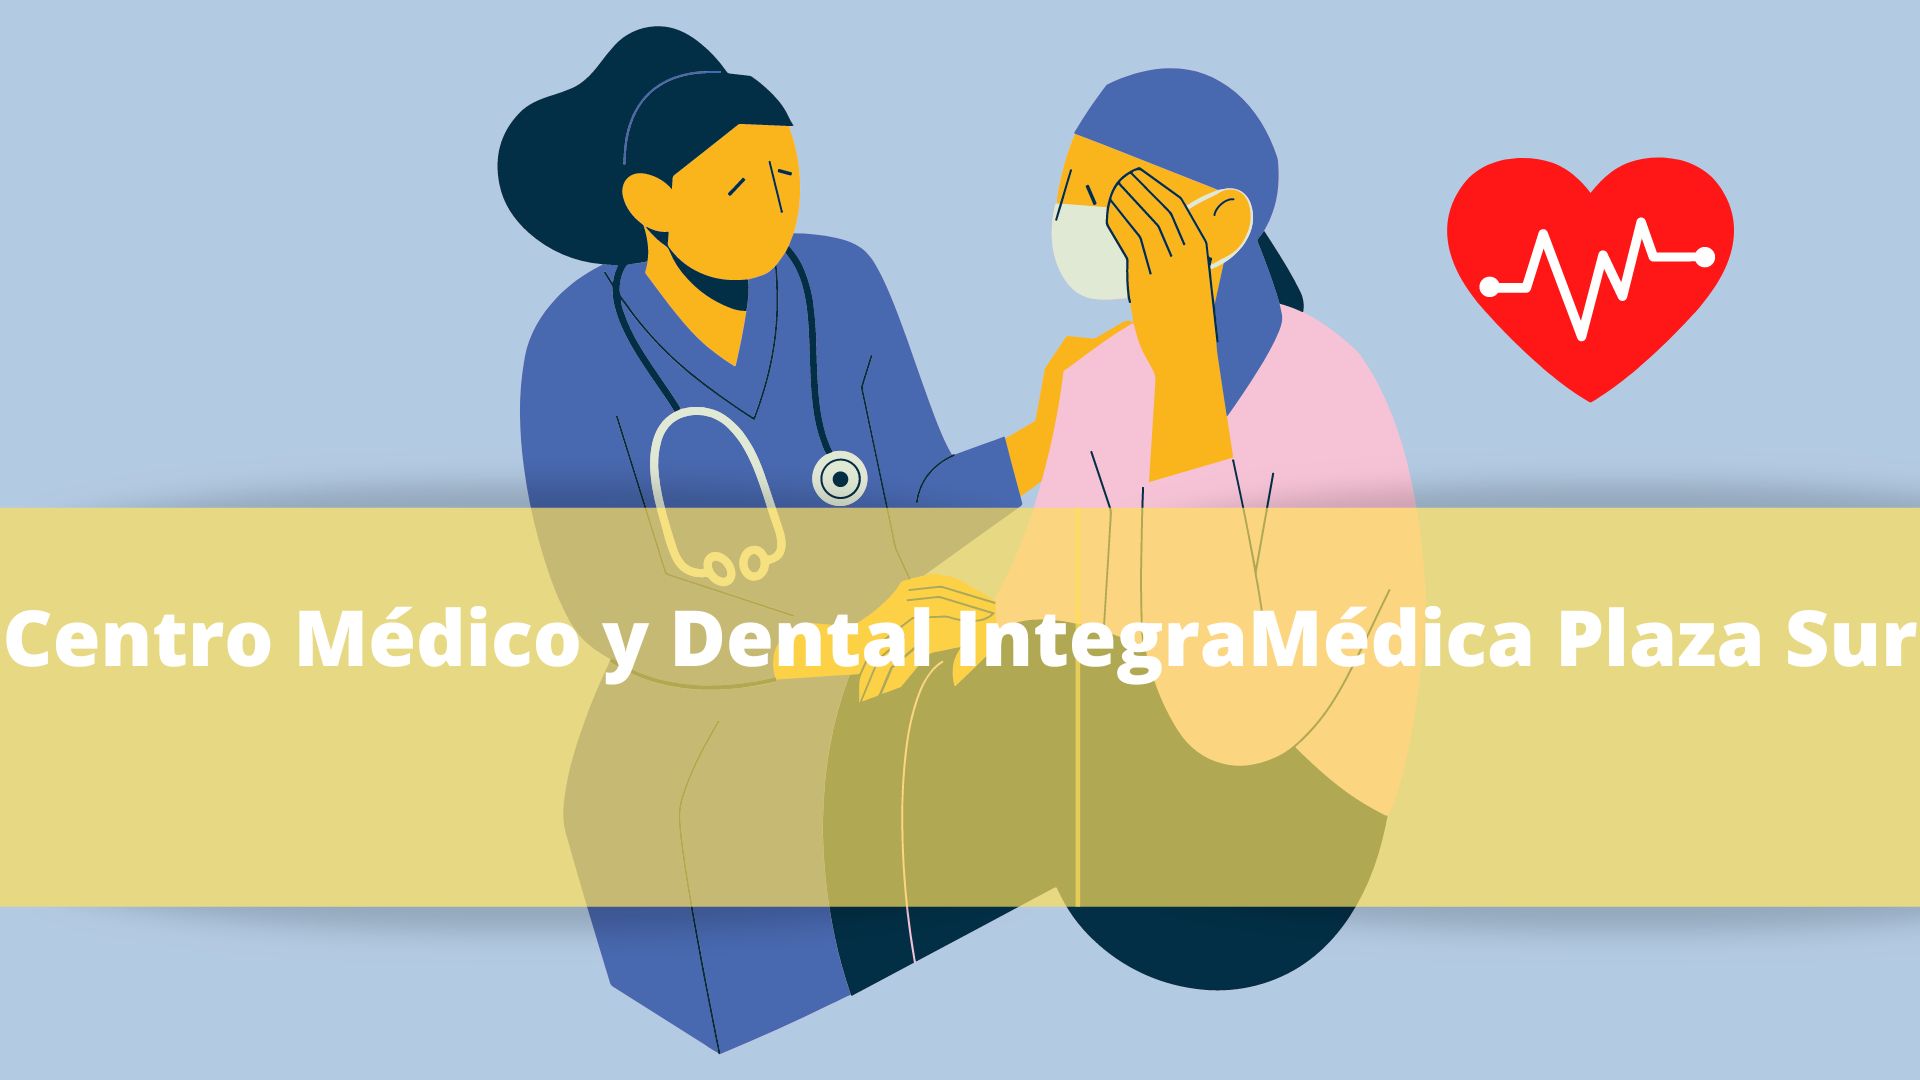 Centro Médico y Dental IntegraMédica Plaza Sur